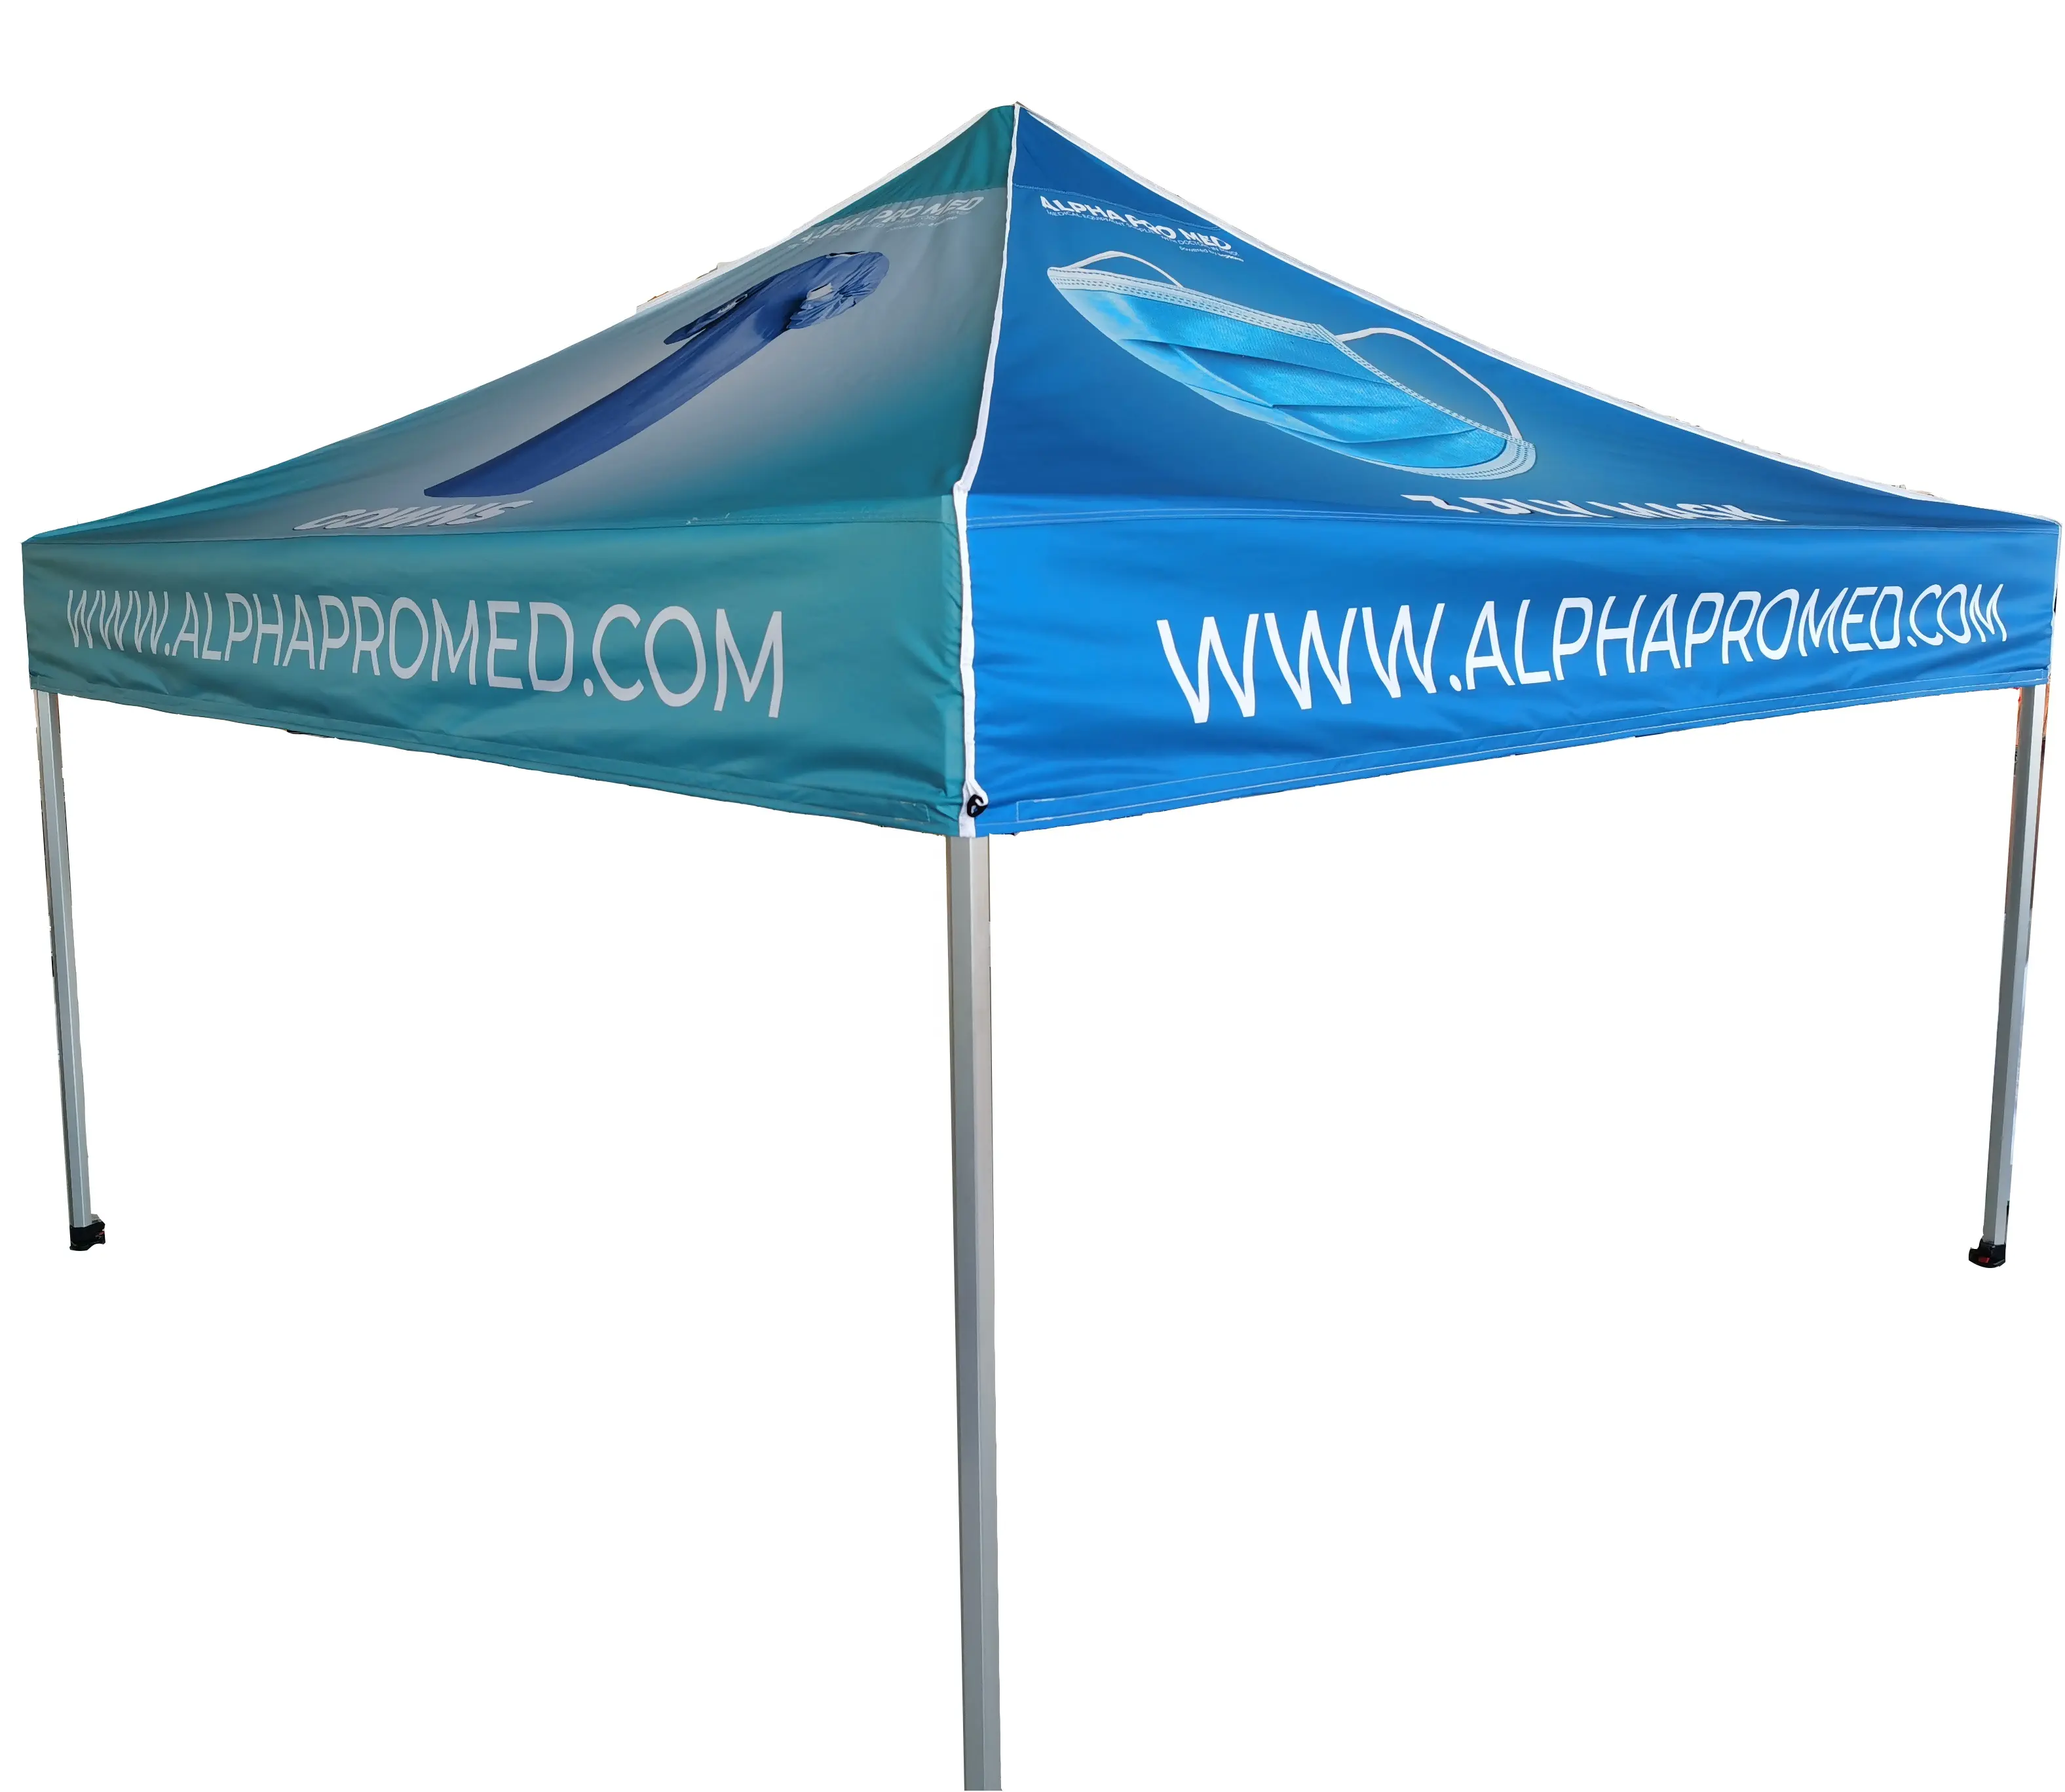 الحدث المظلة خيمة منبثقة عرض سرادق مظلة خيمة المعرض التجاري طباعة 3x3 للطي الترويجية شعار الحزب حقيبة زفاف صبغ